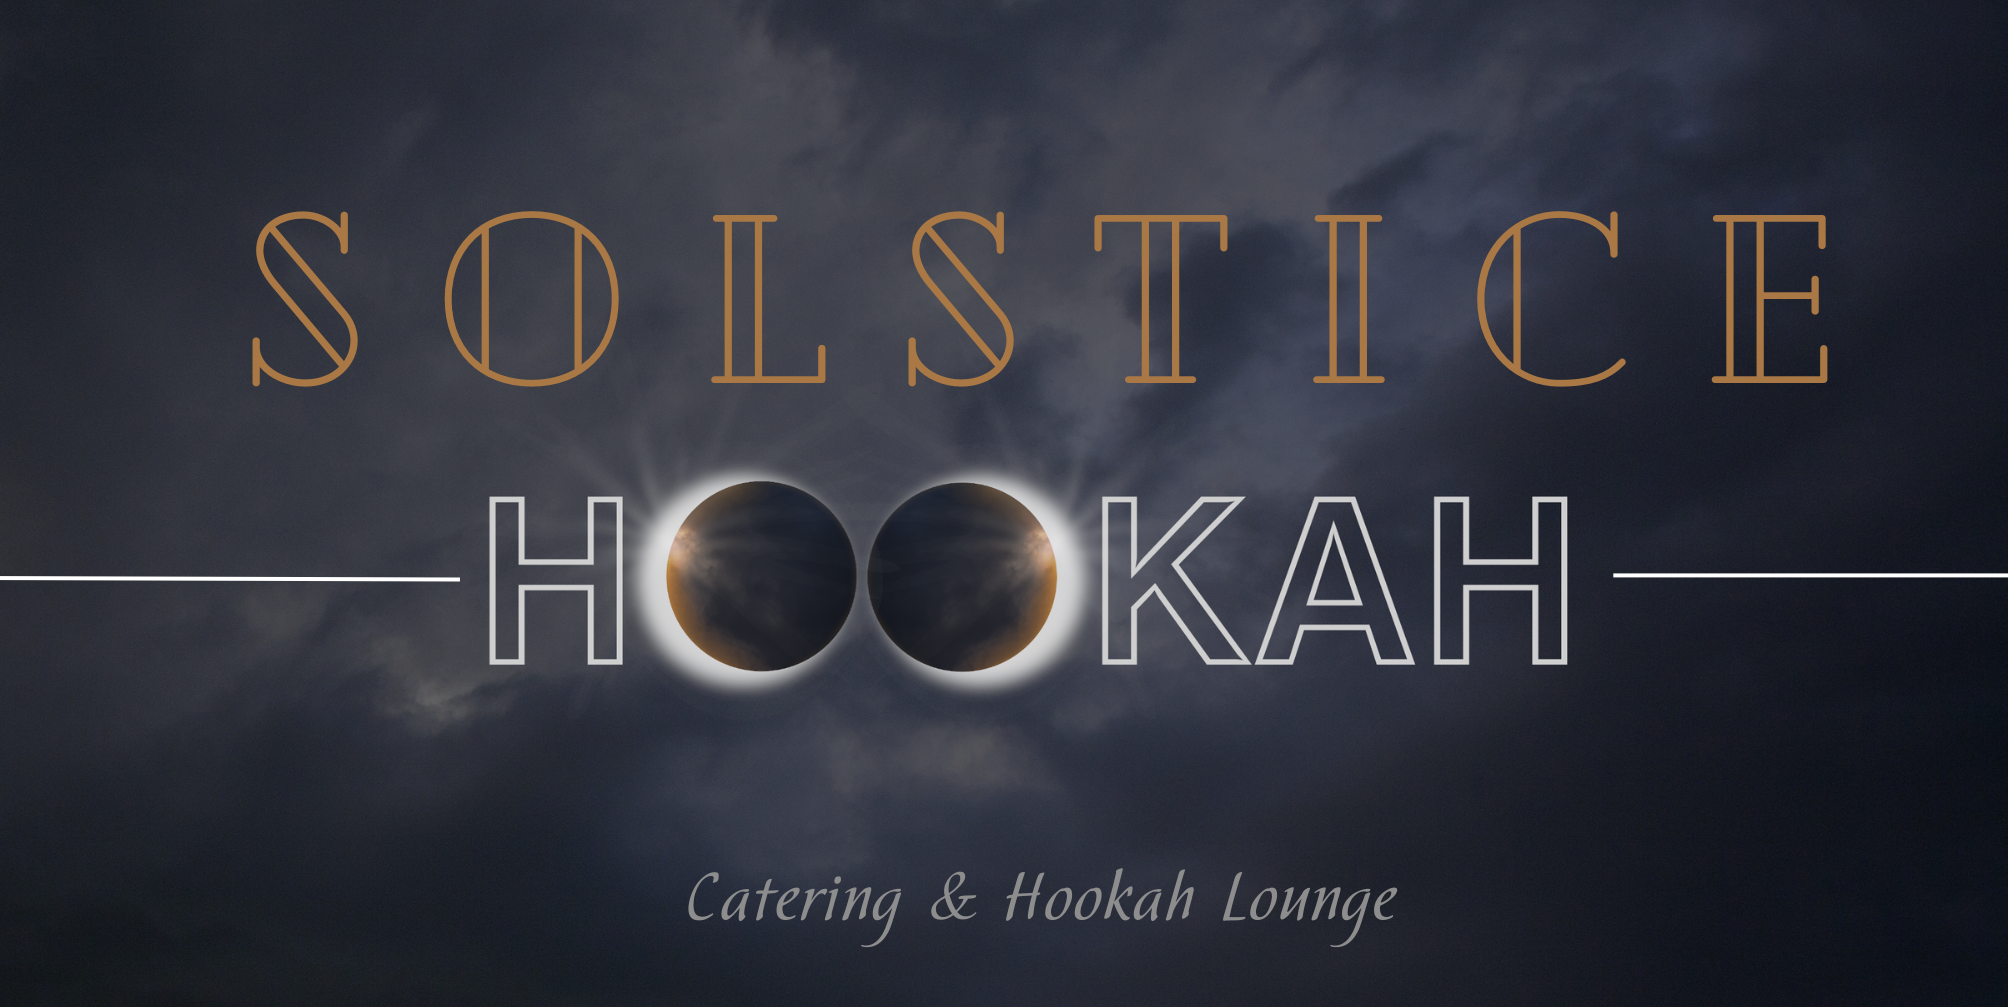 SOLSTICE HOOKAH LOUNGE